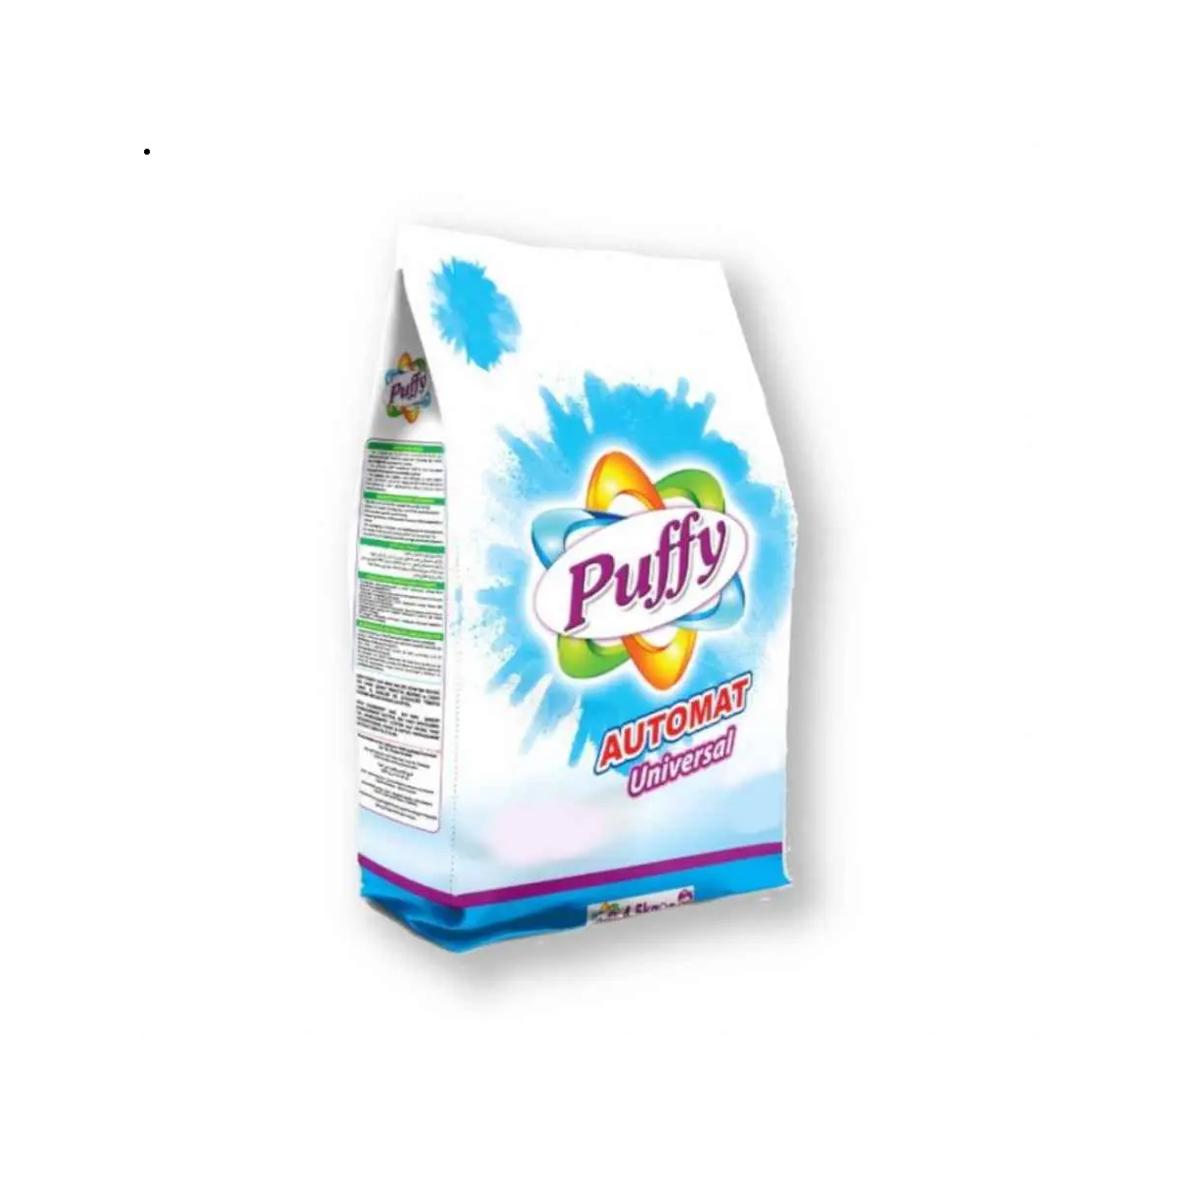 Detergente en polvo para cualquier color de ropa Puffy (1.5 kg / 3.3 lb)